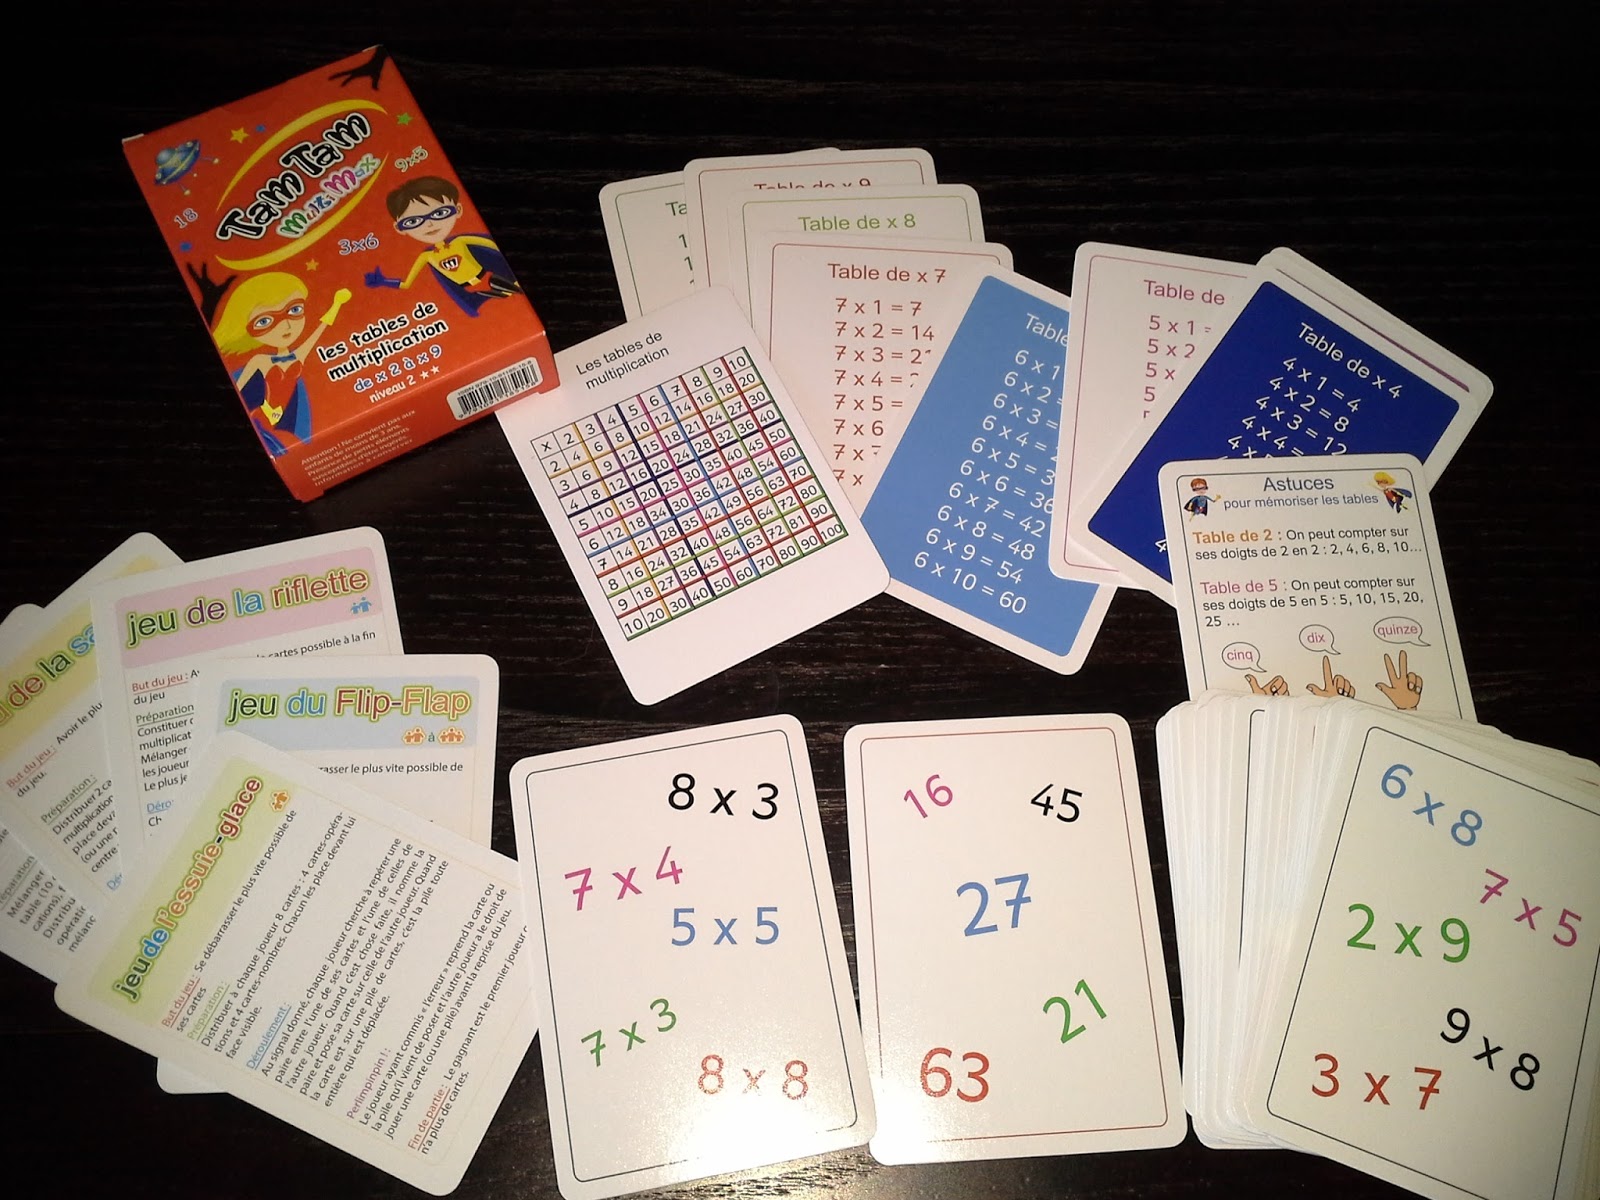 Mistigri des multiplications : un jeu pour réviser les tables de  multiplication